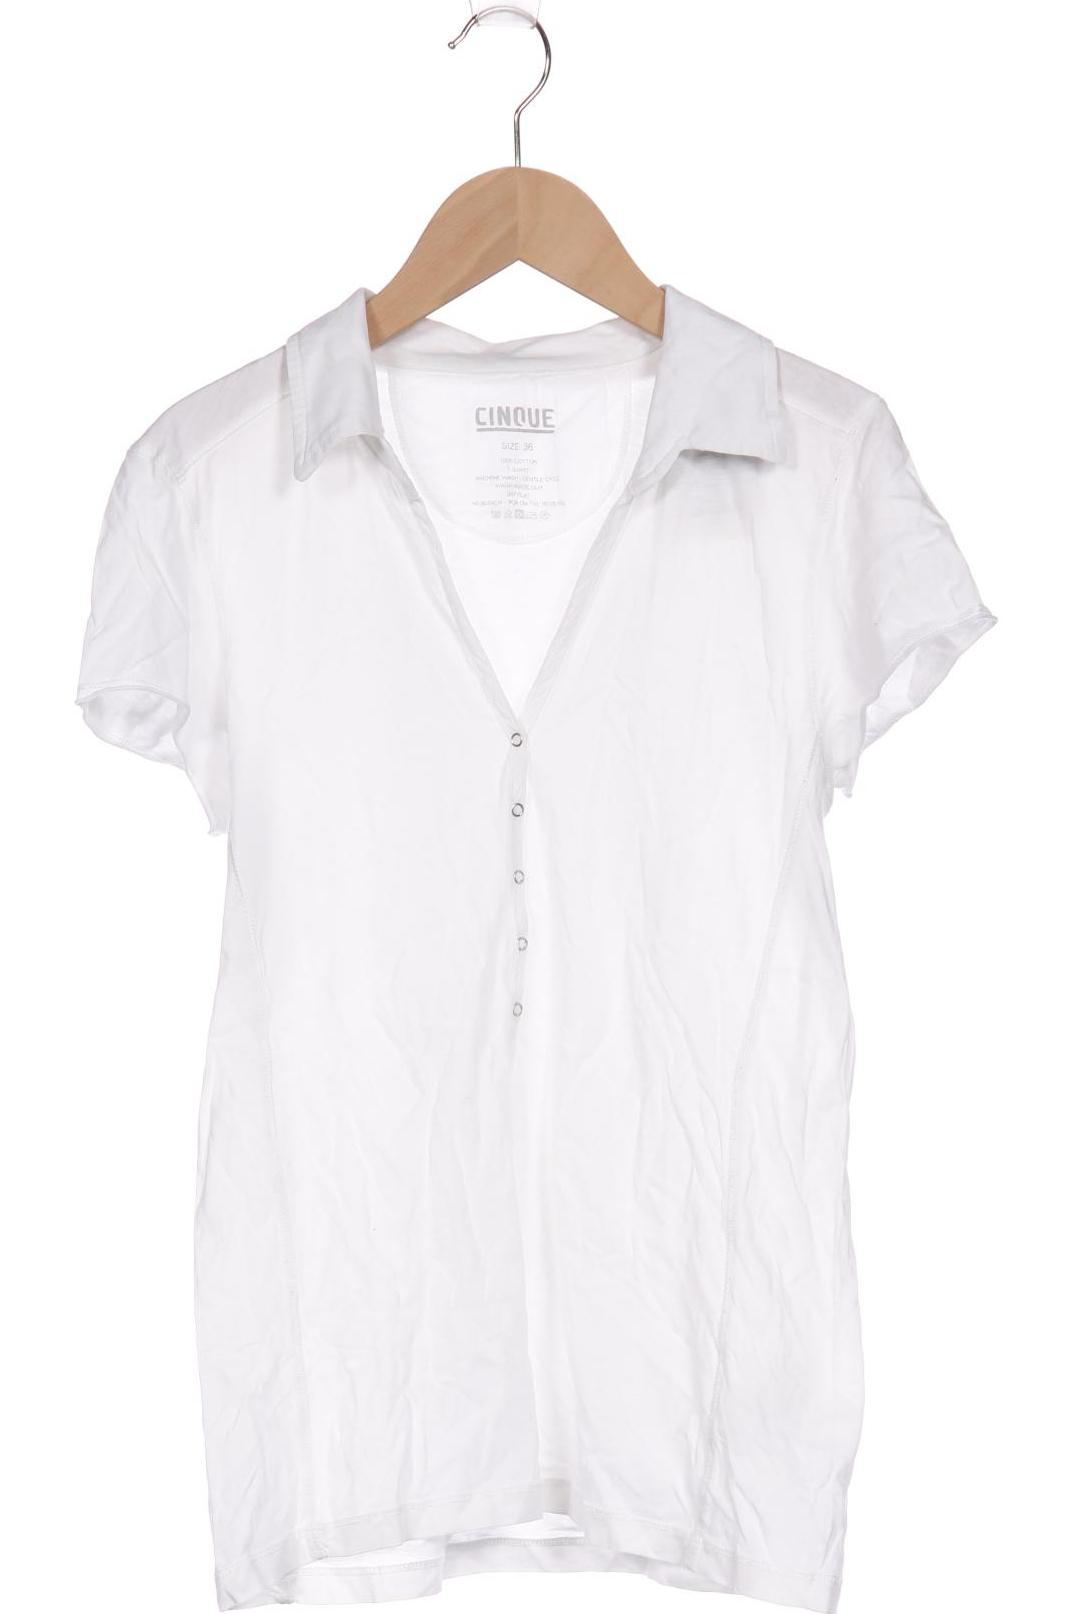 Cinque Damen Poloshirt, weiß, Gr. 36 von CINQUE